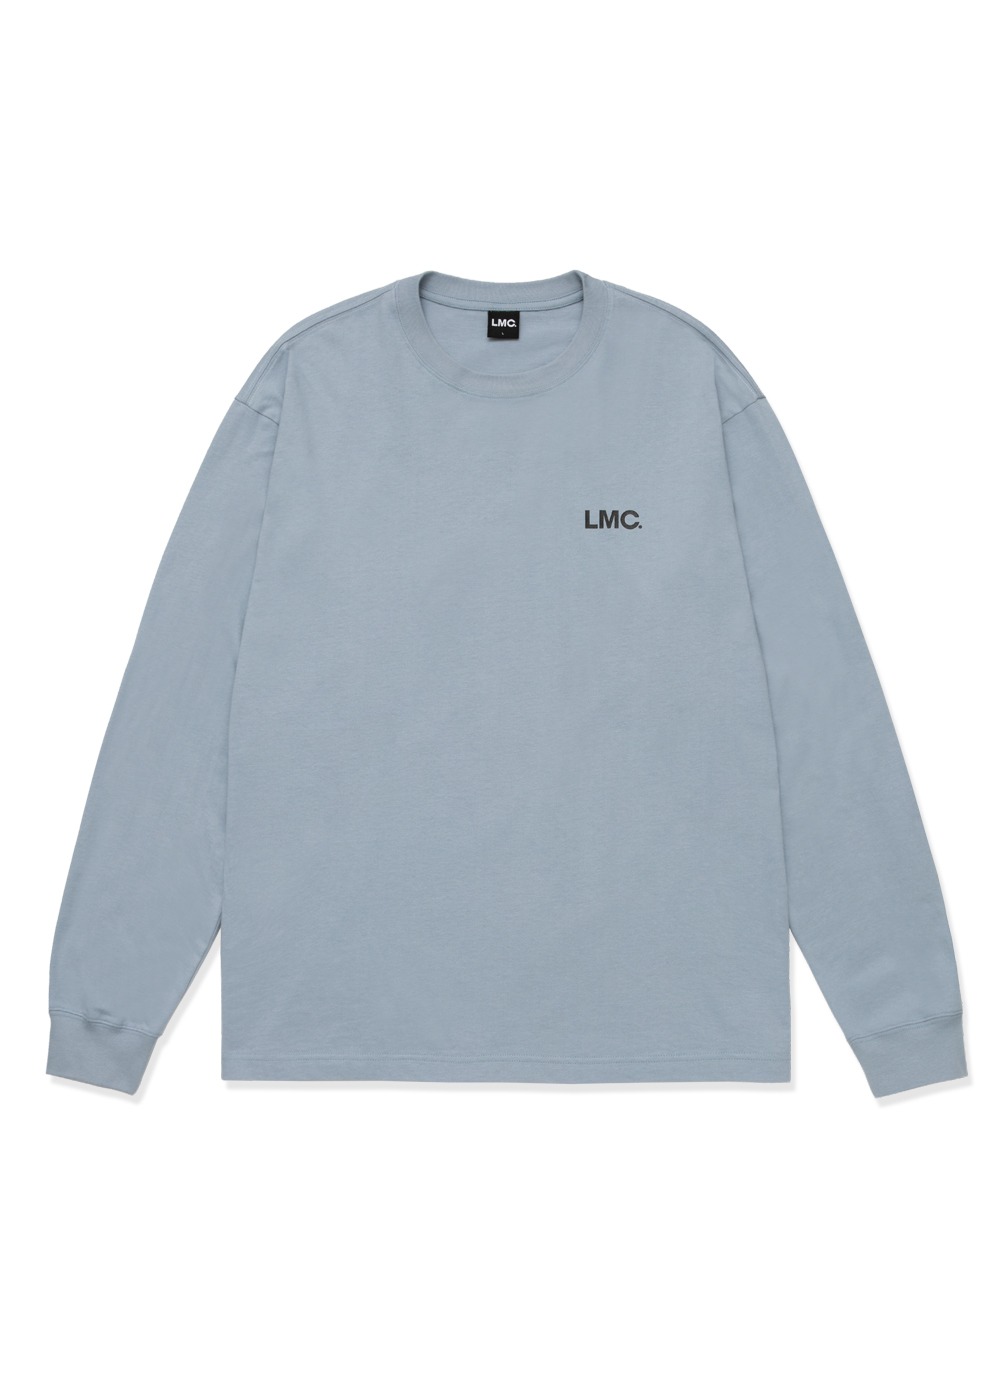 LMC BASIC OG LONG SLV TEE blue gray